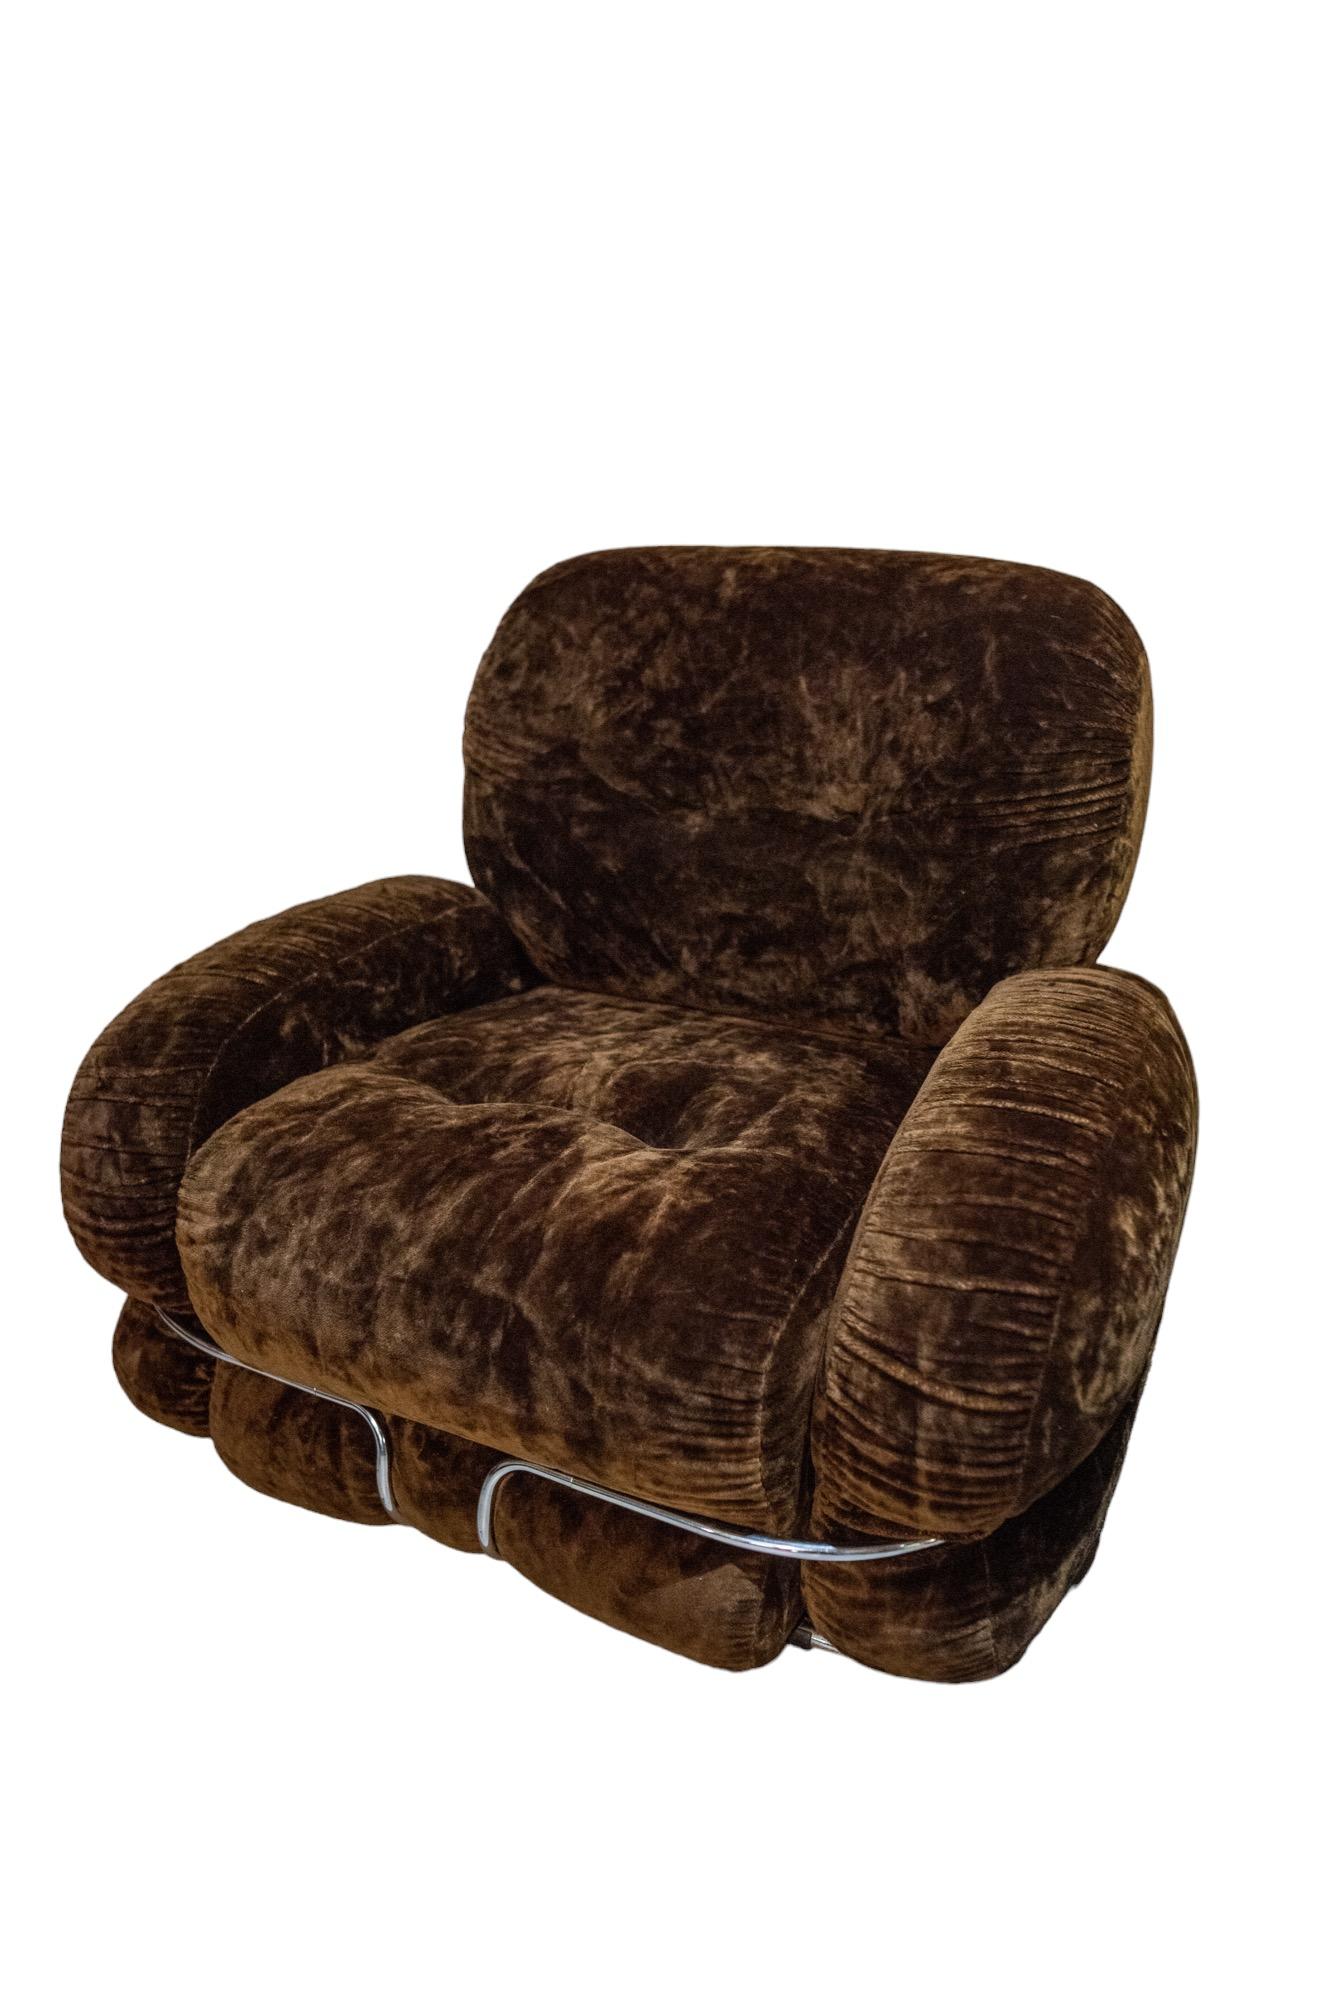 Paire de fauteuils modèle Okay en velours couleur café et acier. Les fauteuils conçus par Adriano Piazzesi et produits par le studio Tre D Firenze se caractérisent non seulement par leur forme douce et arrondie bien connue, mais aussi par leur